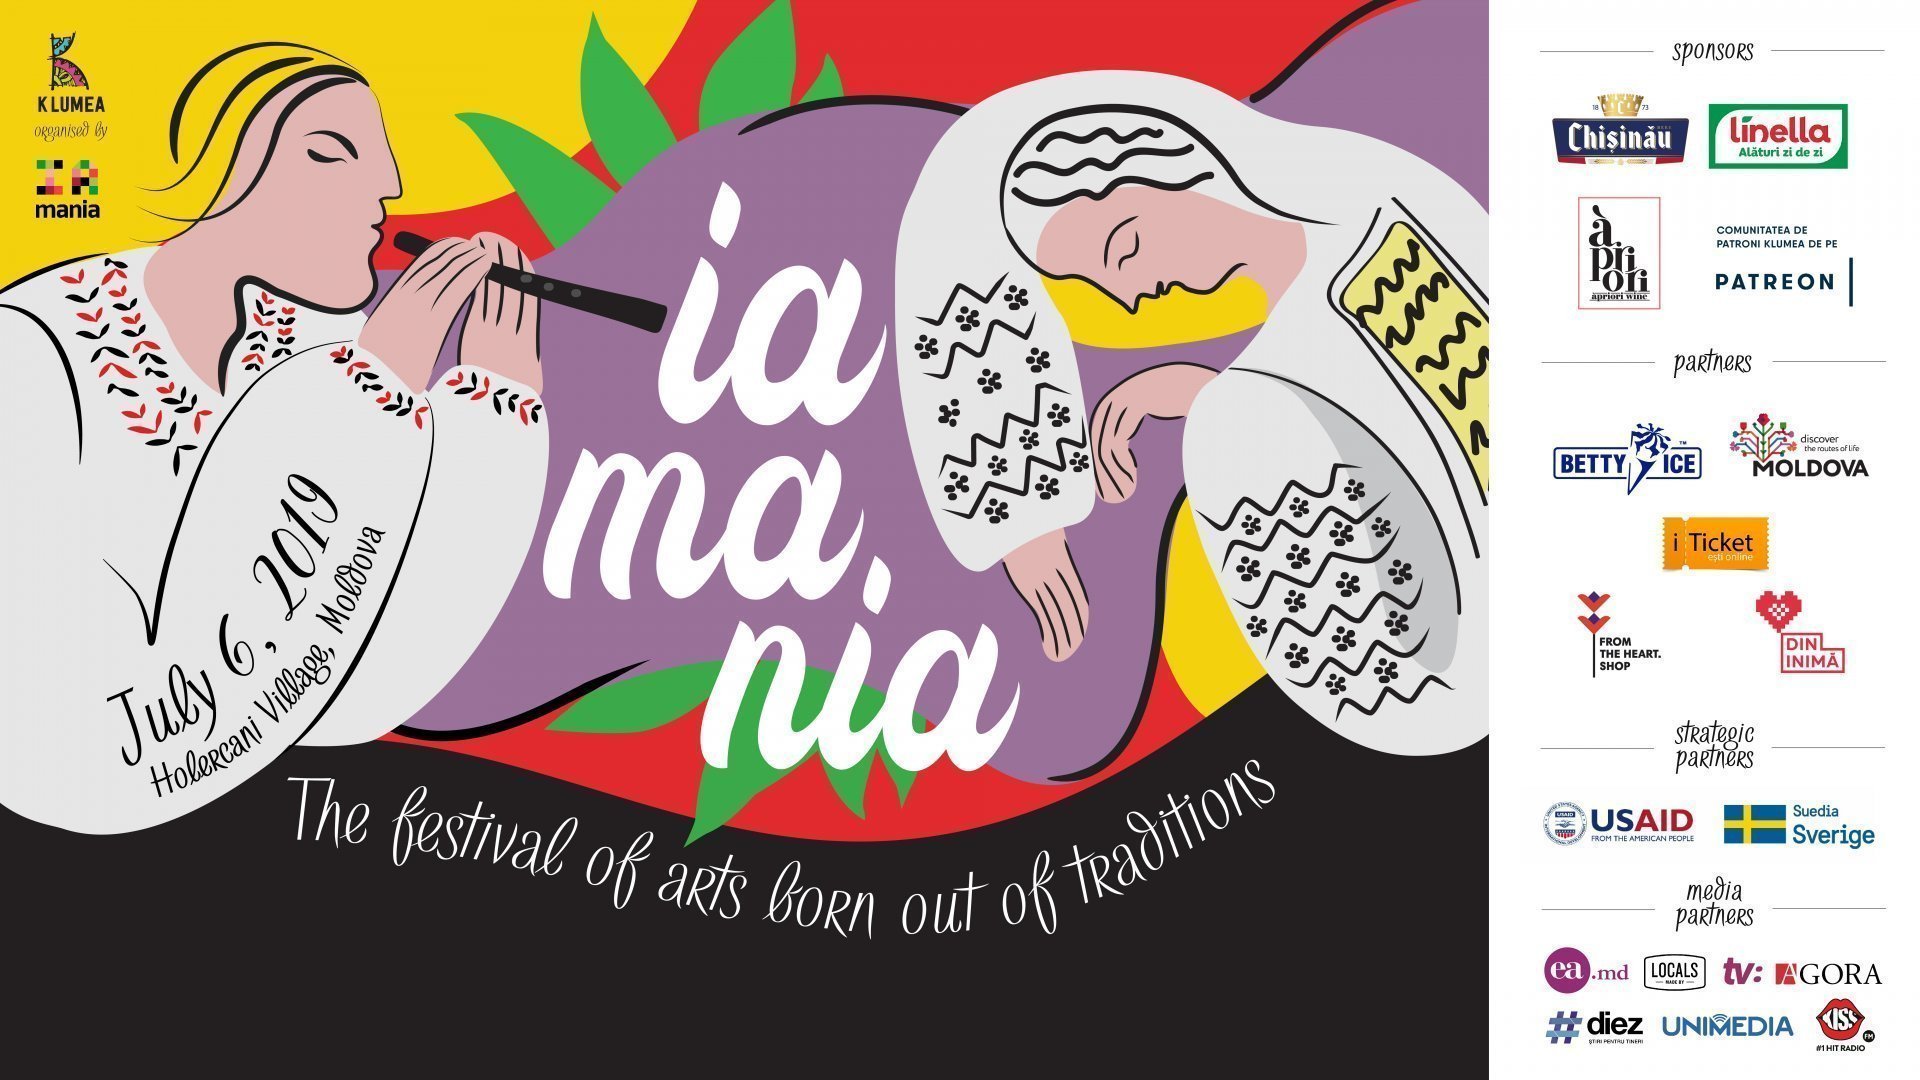  IA MANIA Festival 2019